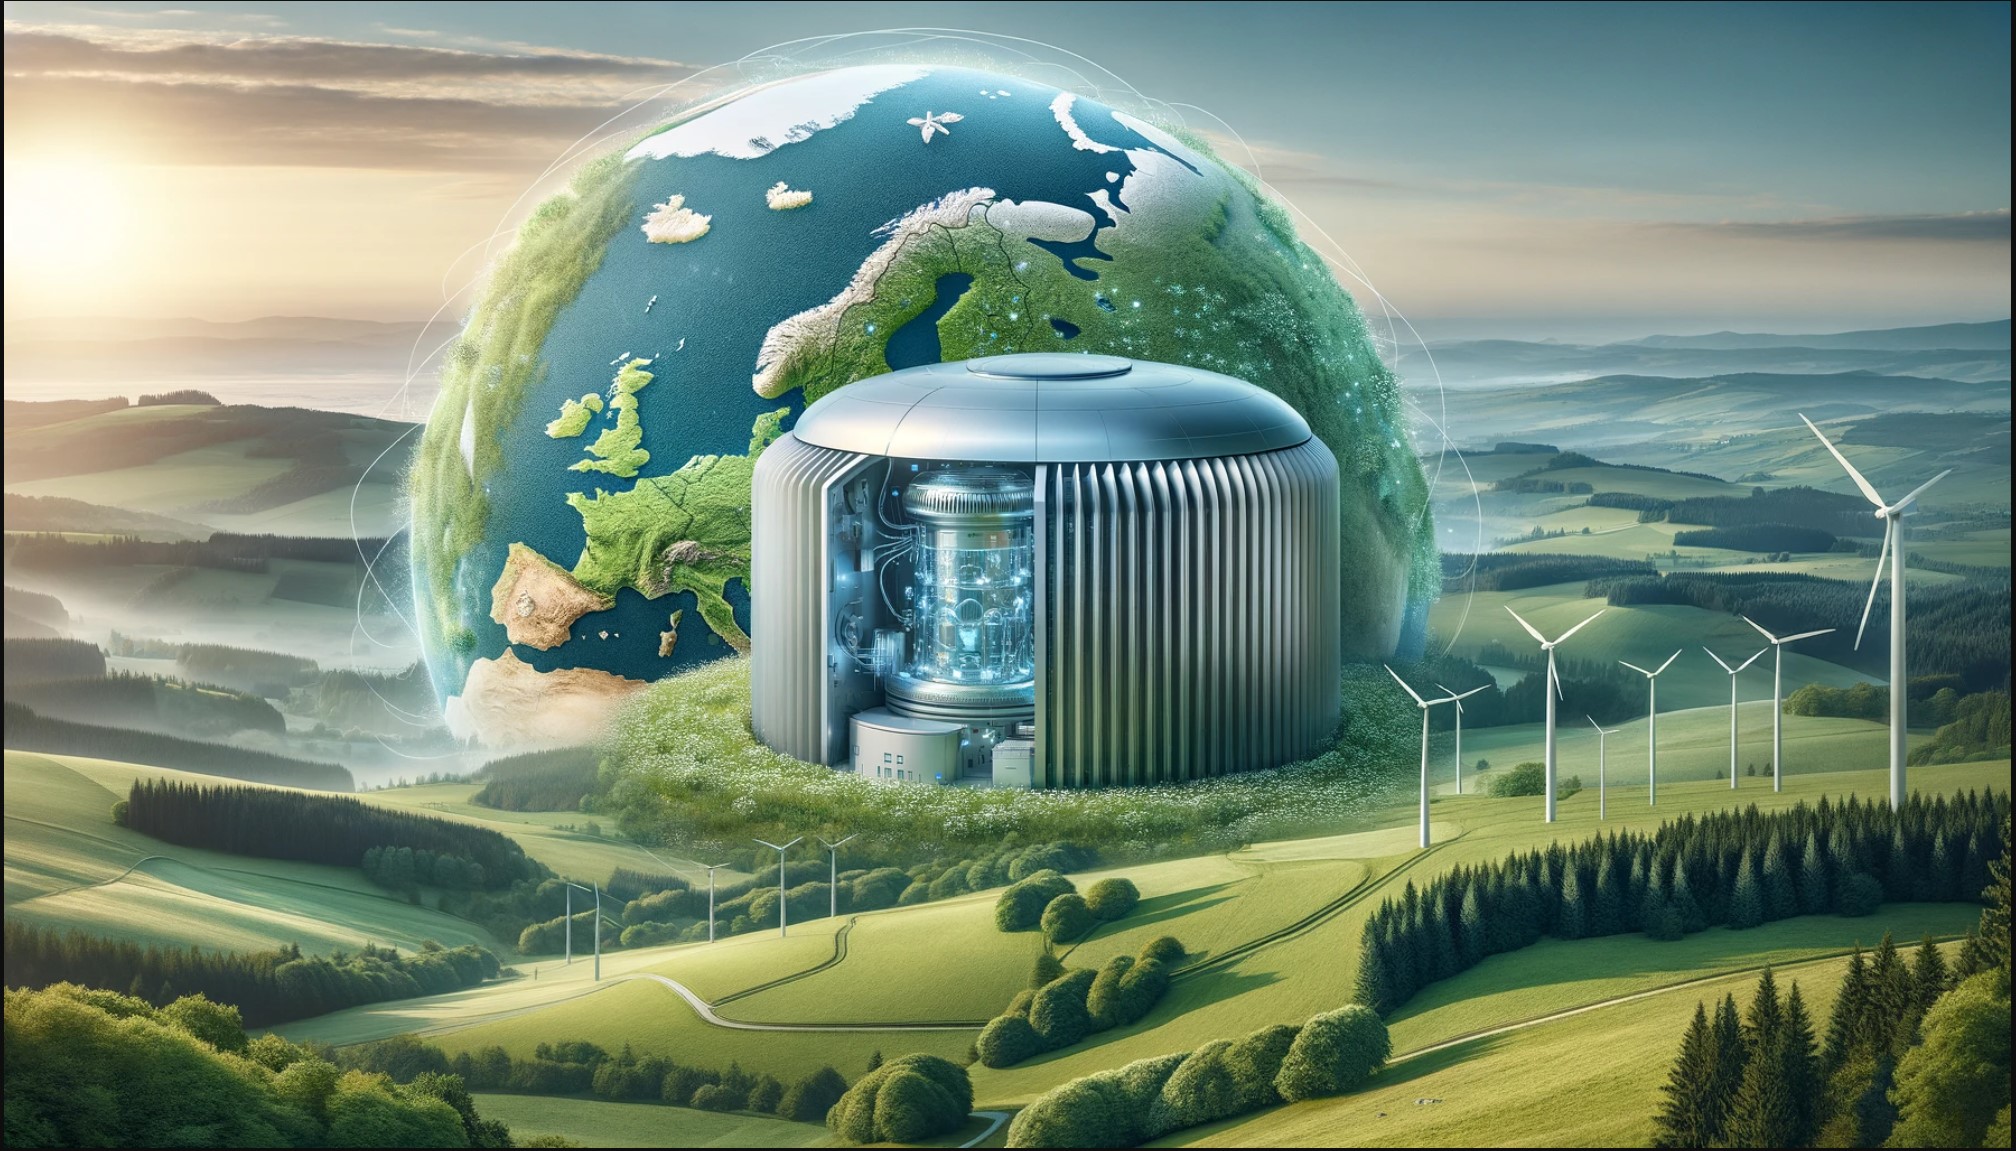 Innovación reactores nucleares modulares pequeños (SMR): clave energética para Europa